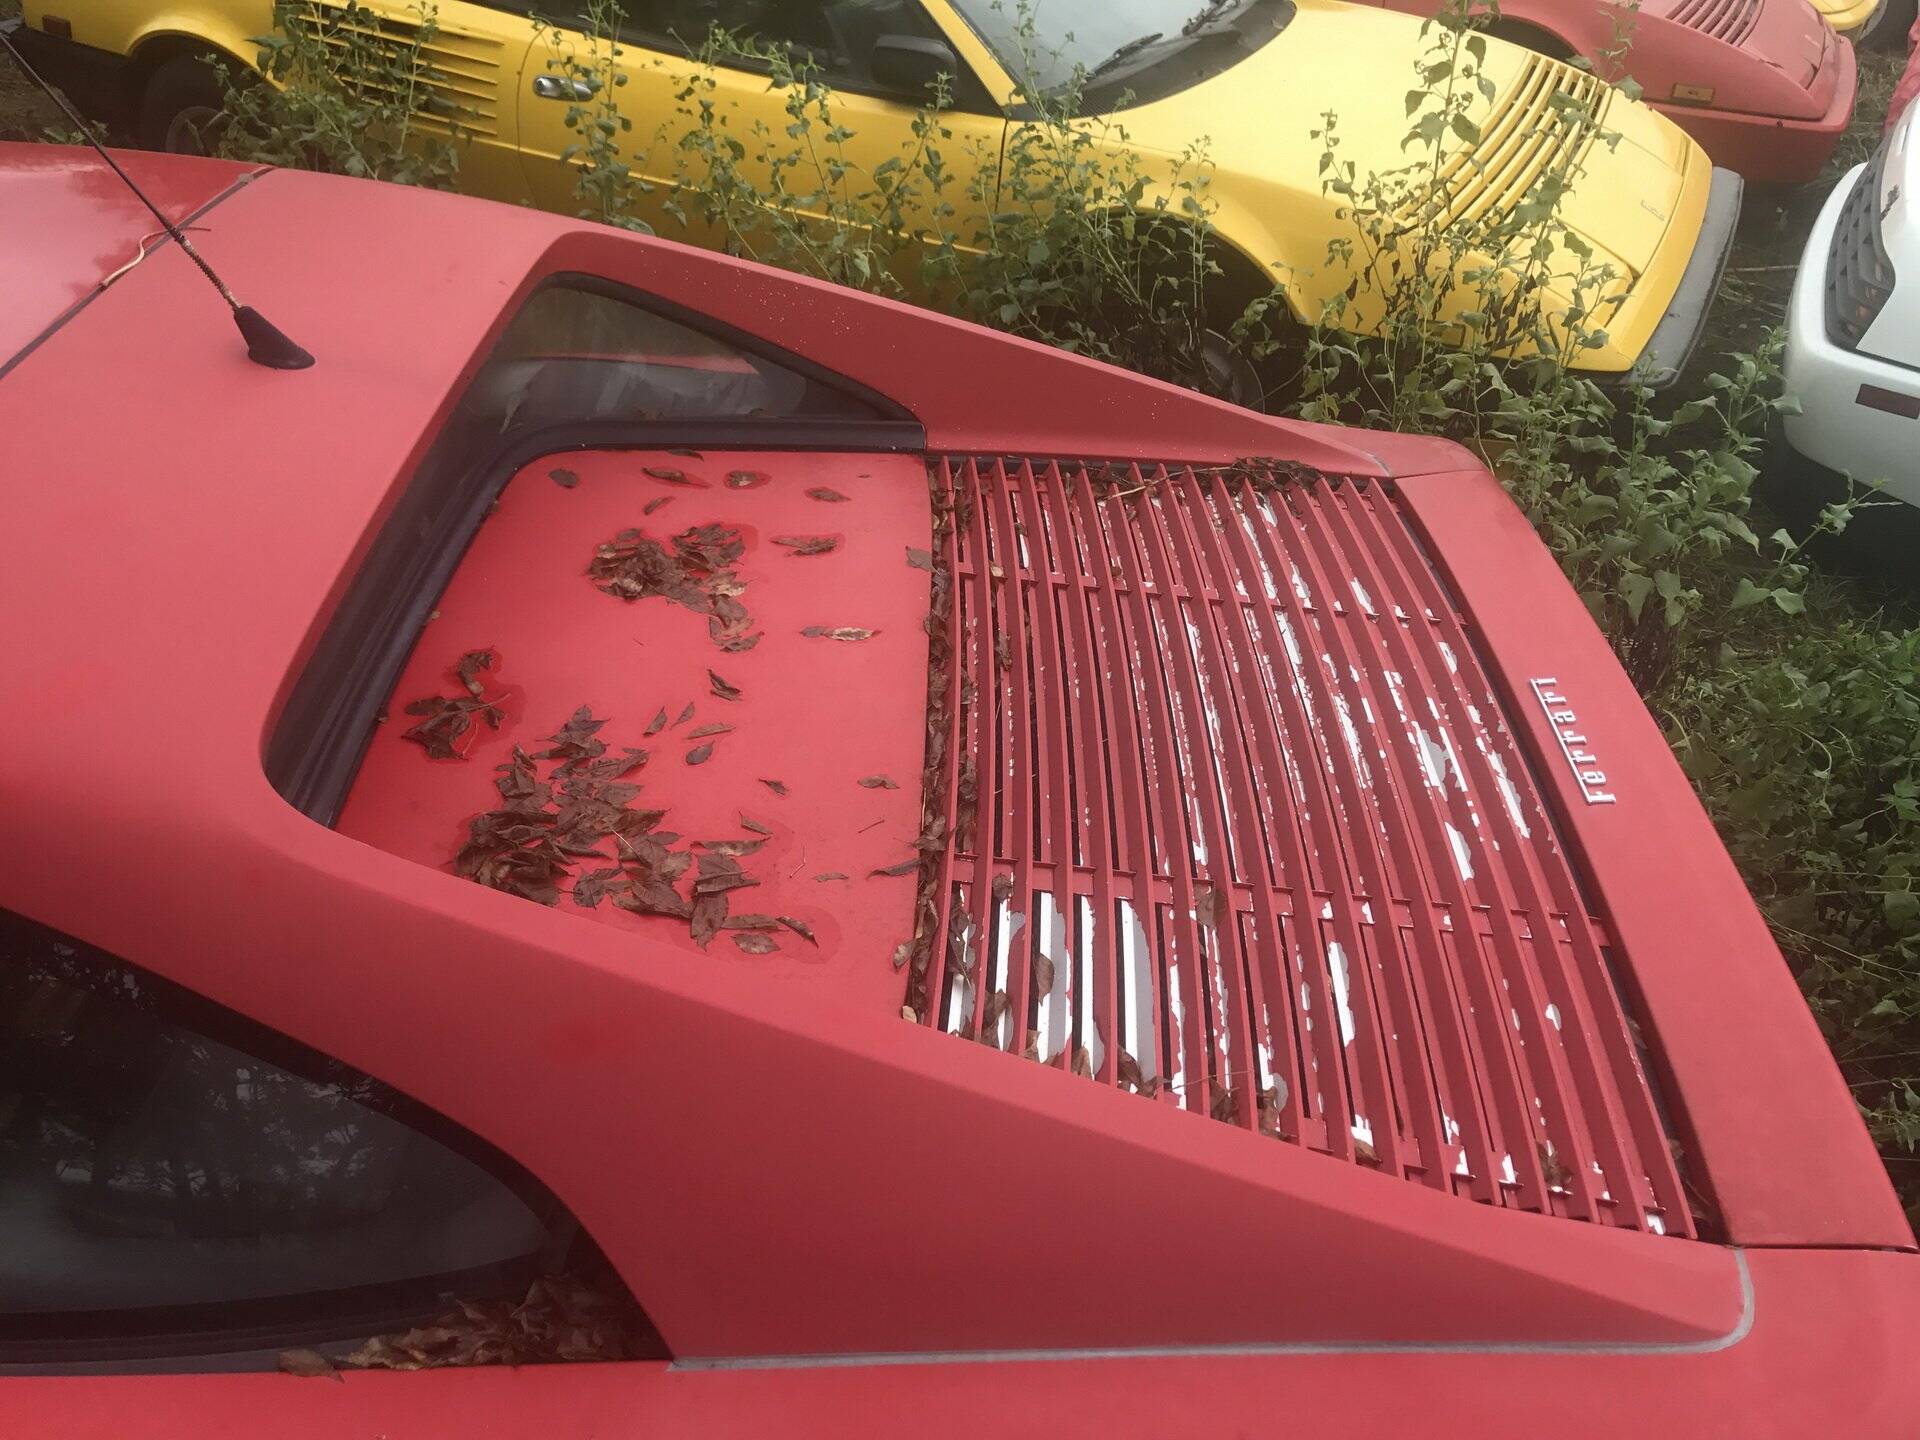 Coleção de Ferrari abandonadas. Foto: Divulgação